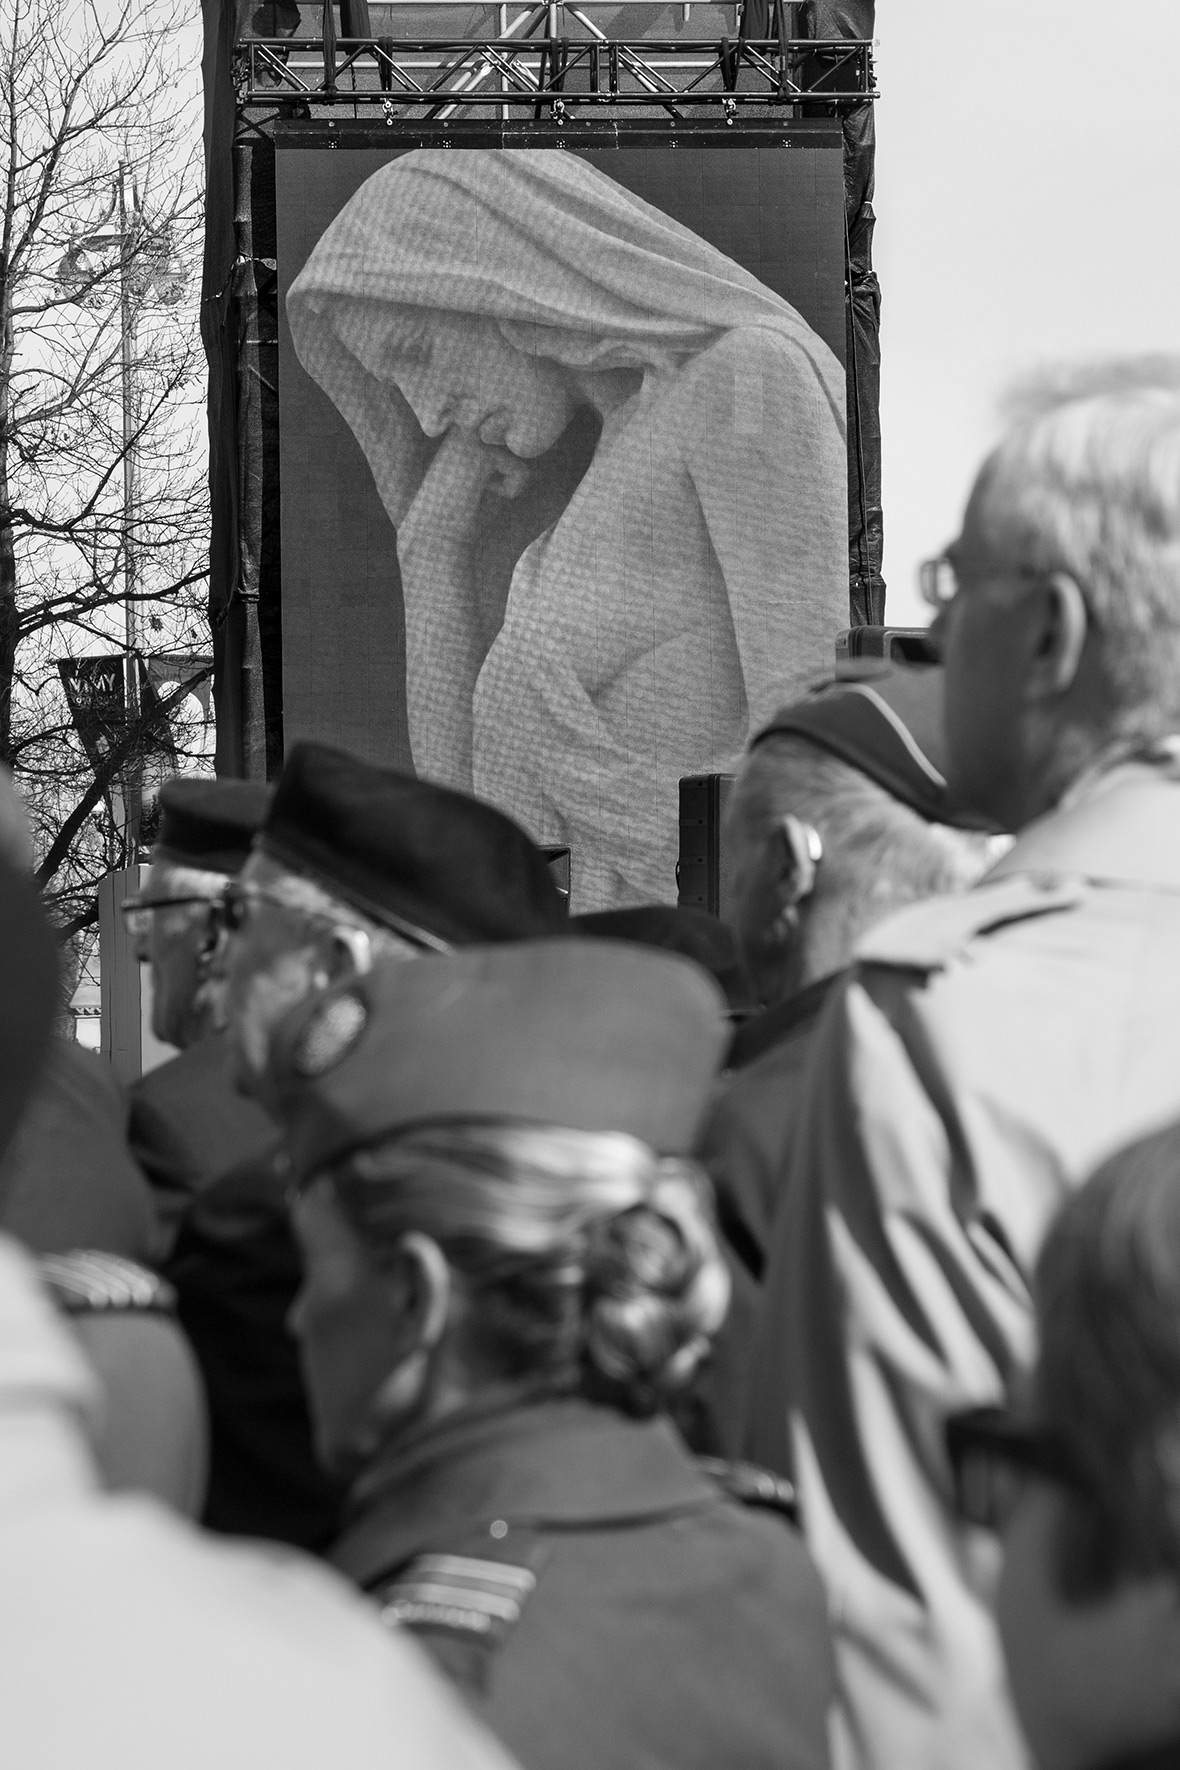 Le public assistera au 100e anniversaire de la bataille de Vimy à Ottawa (Ontario), le 9 avril 2017. Crédit photo: Caporal (Cpl) Chase Miller Services d'imagerie de l'Unité de soutien des Forces canadiennes (Ottawa)